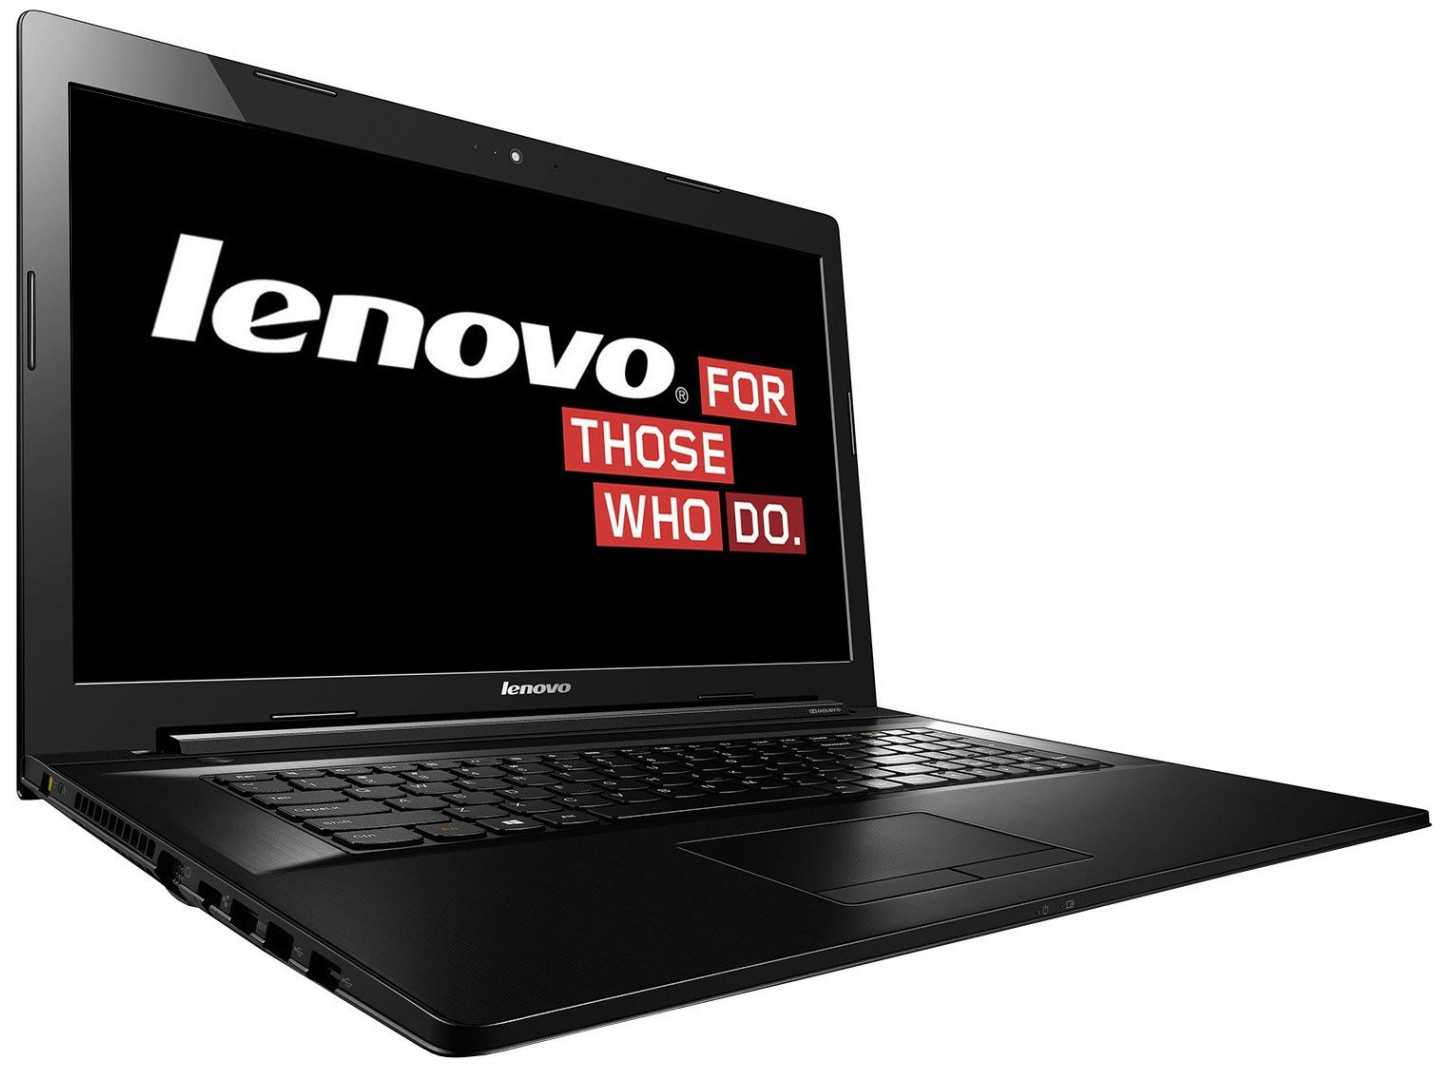 Ноутбук lenovo z70-80 (80fg003krk) — купить, цена и характеристики, отзывы